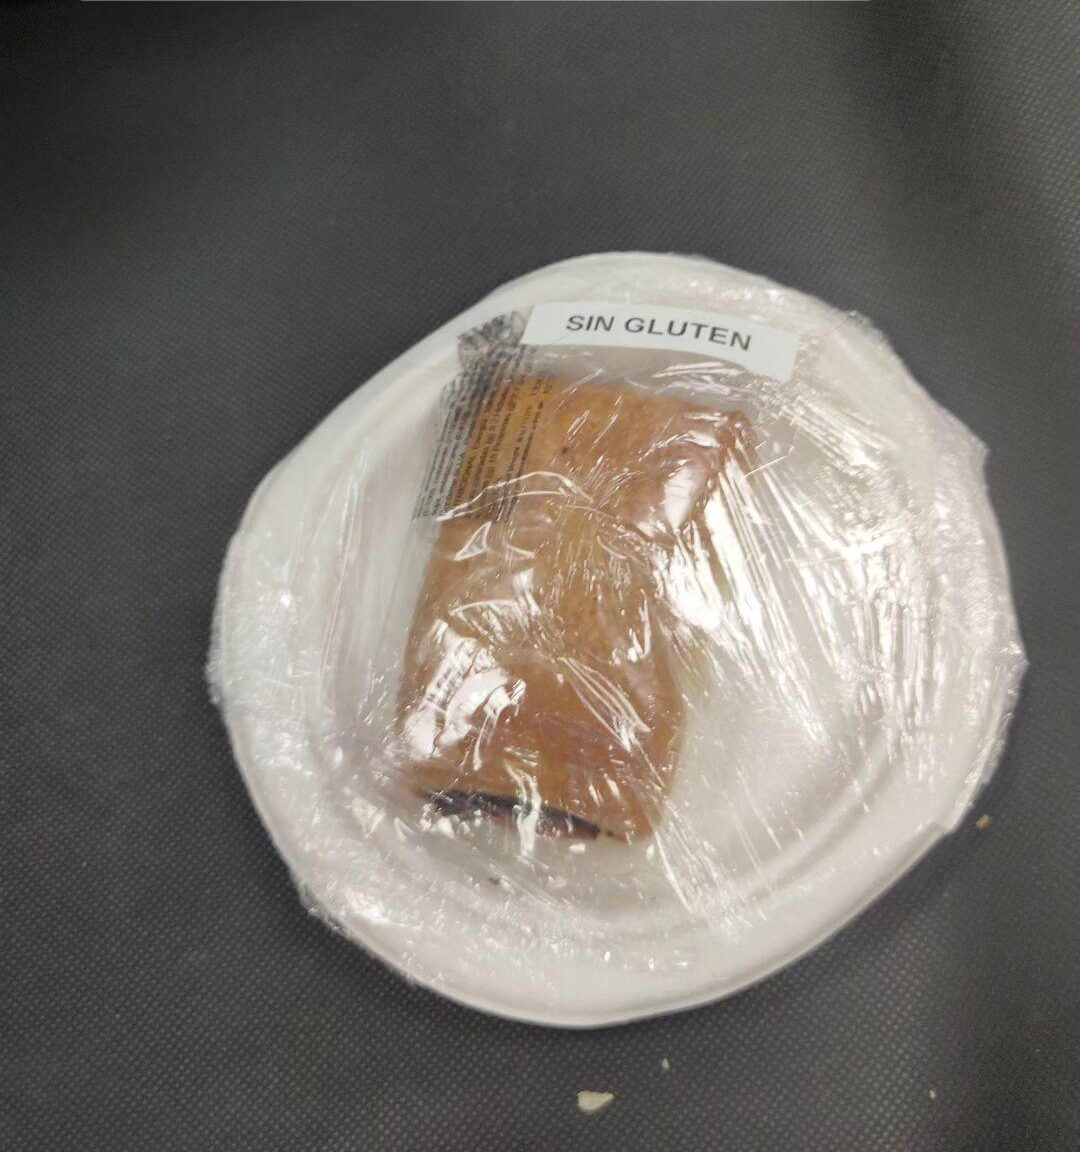 Foto de lo que parece una napolitana de chocolate peusta en un plato de cartón y envuelto en film transparente con una pegatina que reza: sin gluten.